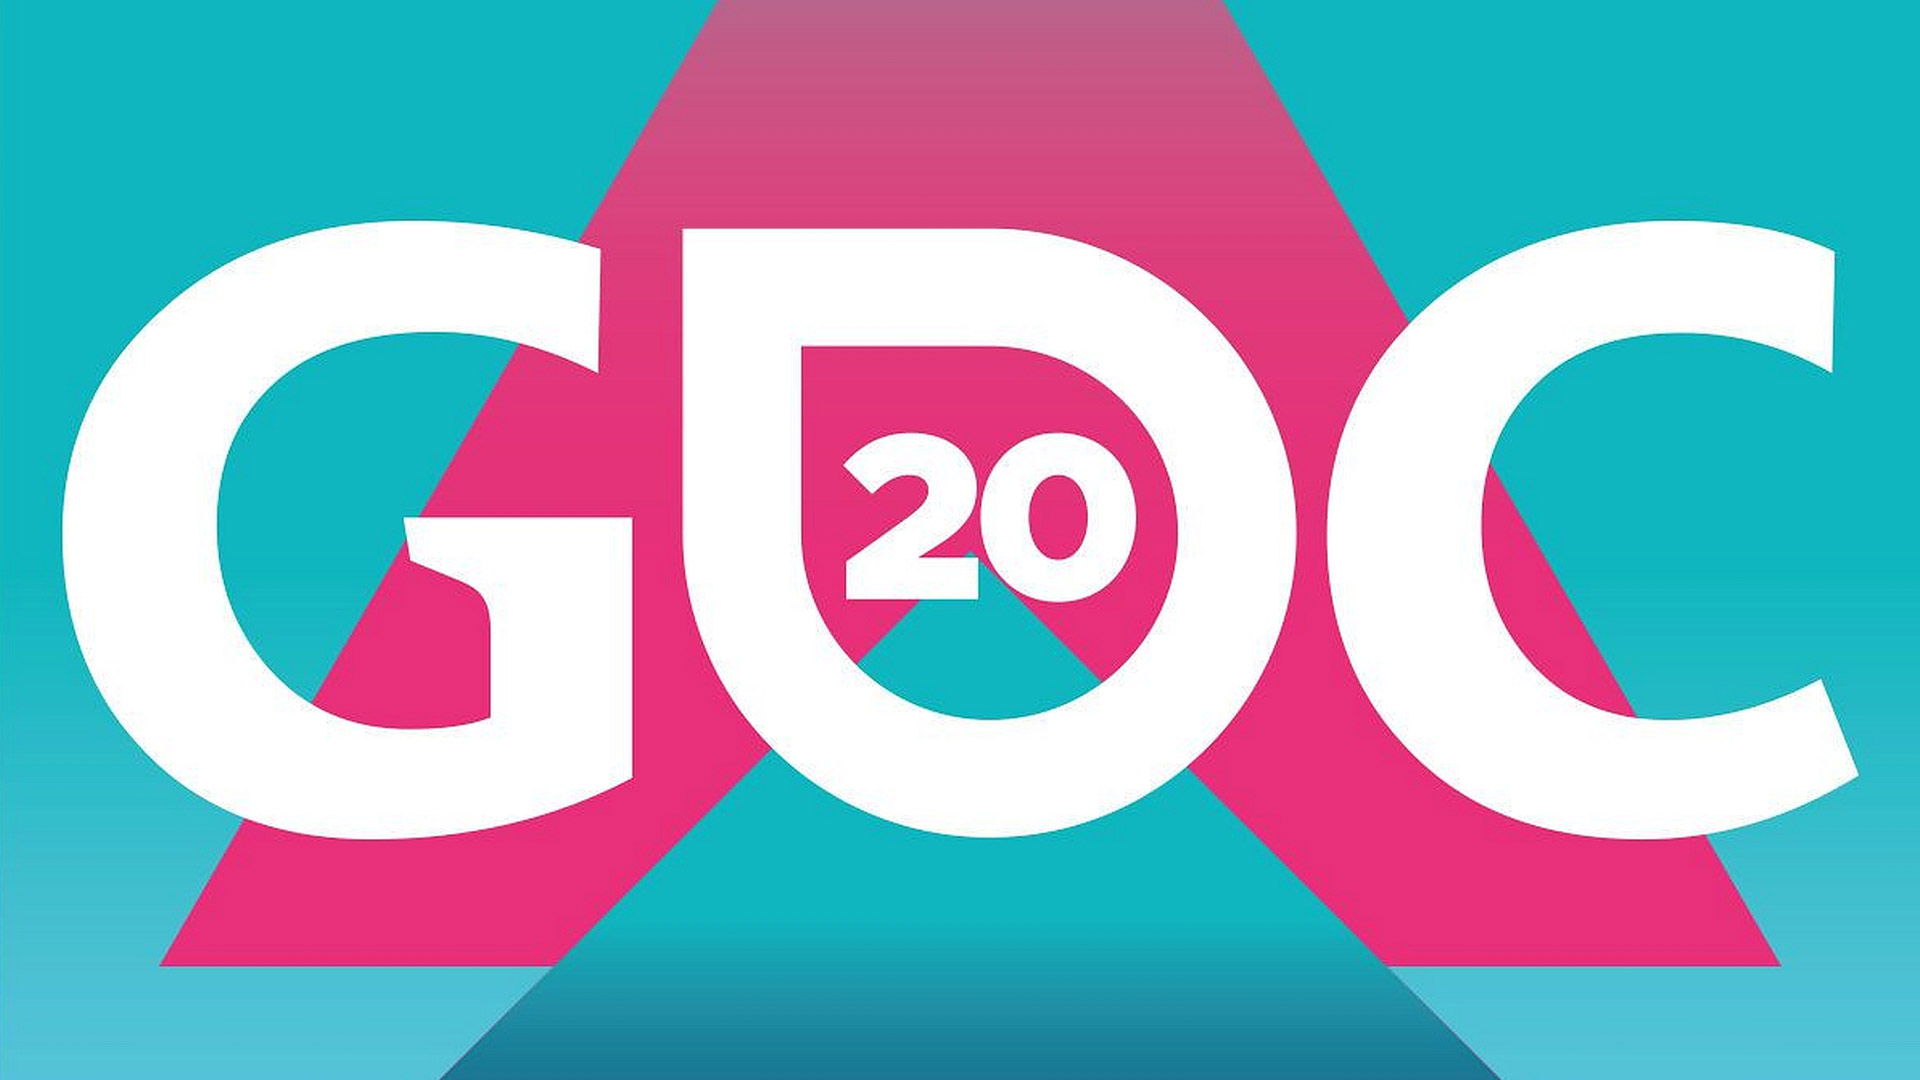 زمان برگزاری رویداد GDC 2020 به تعویق افتاد